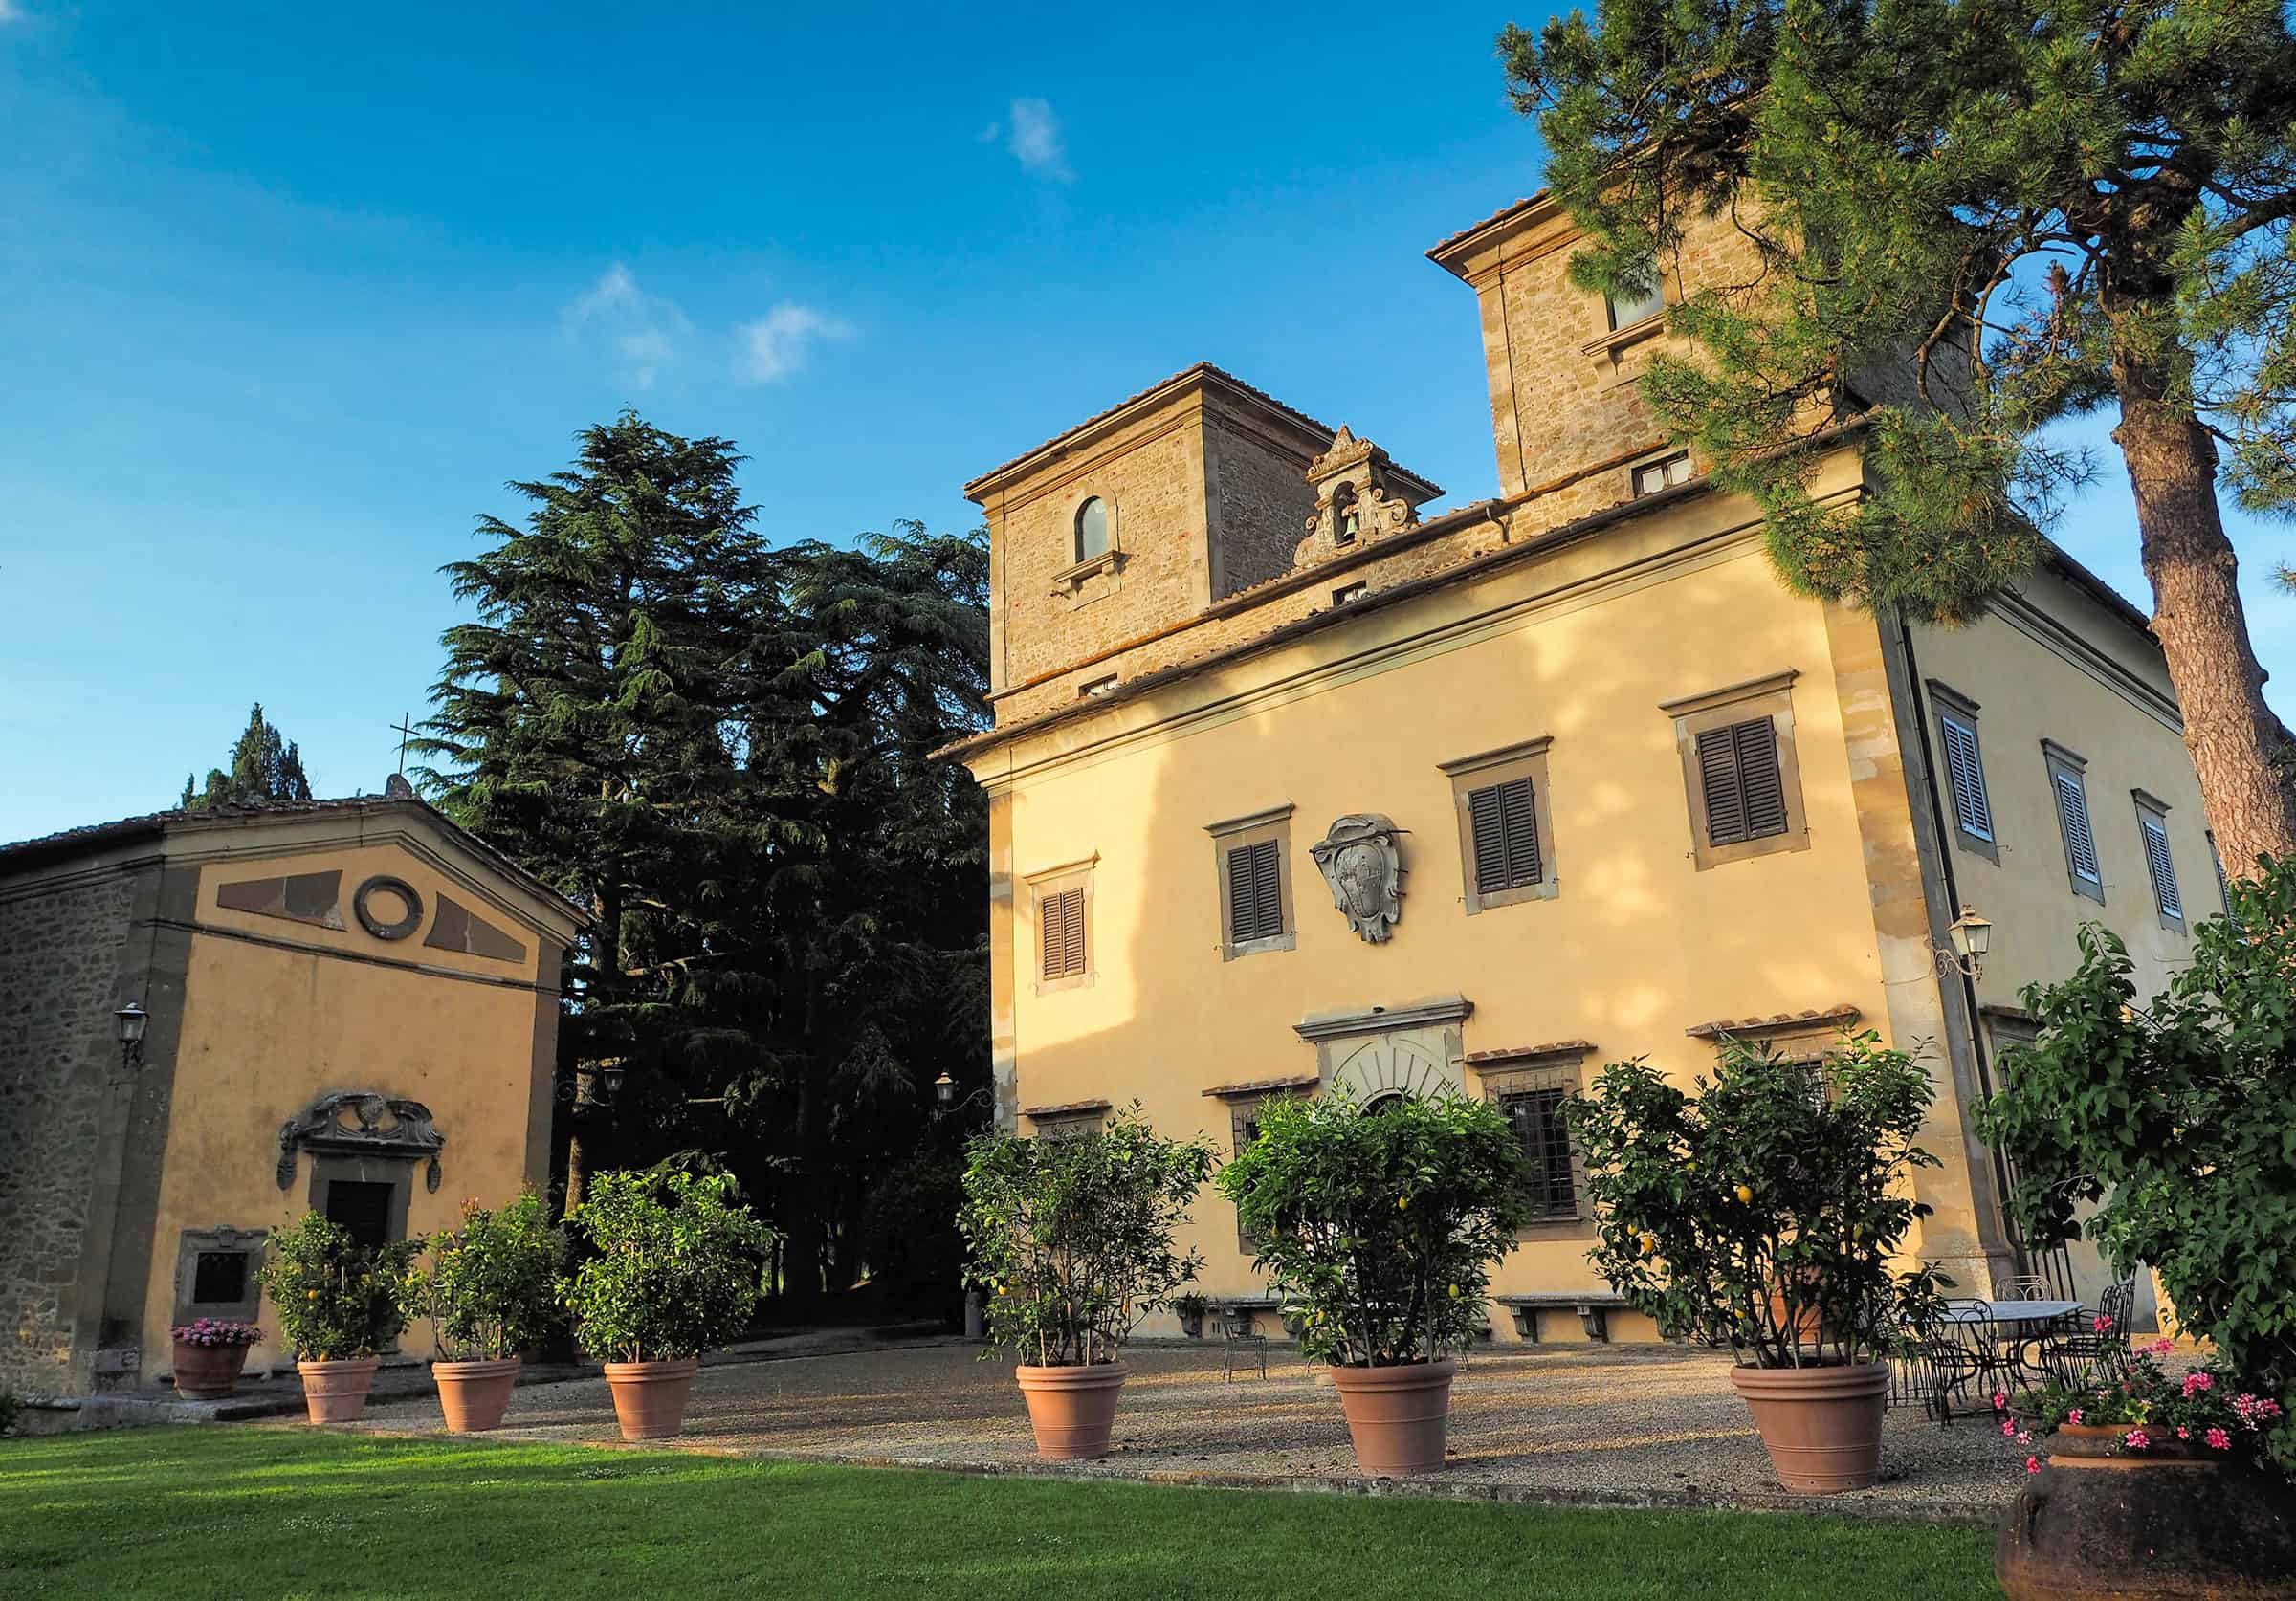 Castello d'Albola in Chianti